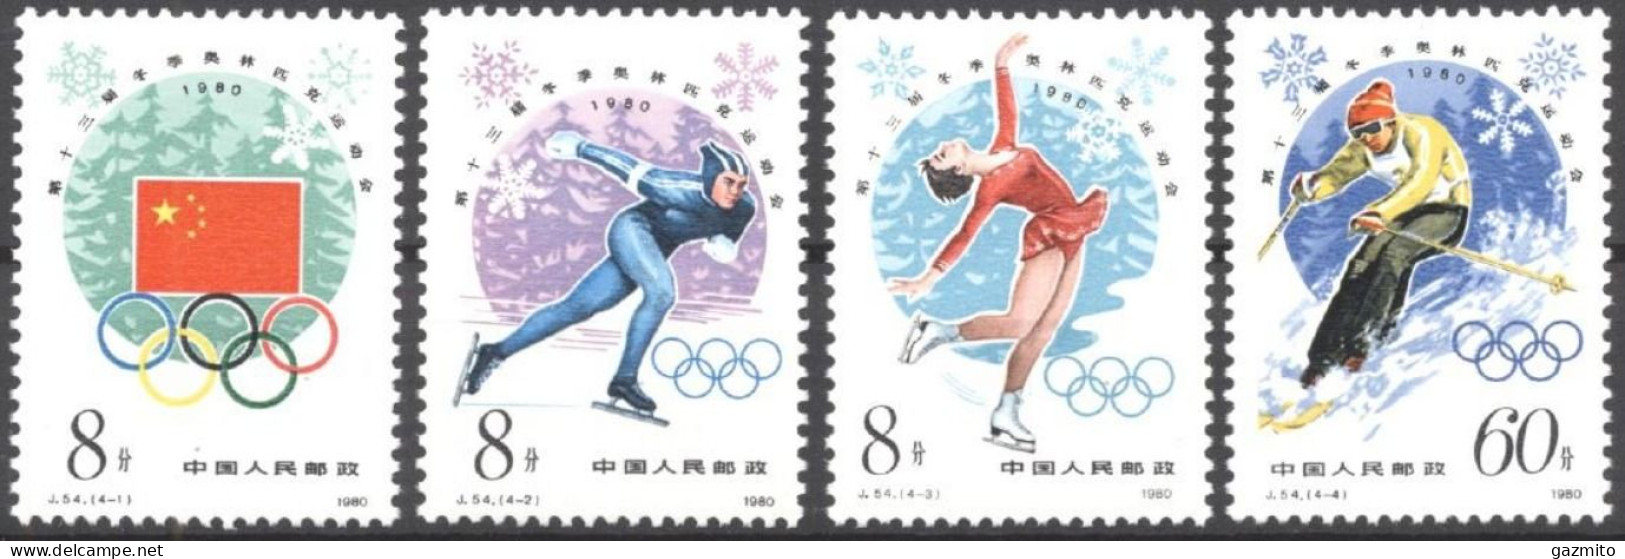 China 1980, Winter Olympic Games, Lake Placid, Skating, Skiing, 4val - Ongebruikt